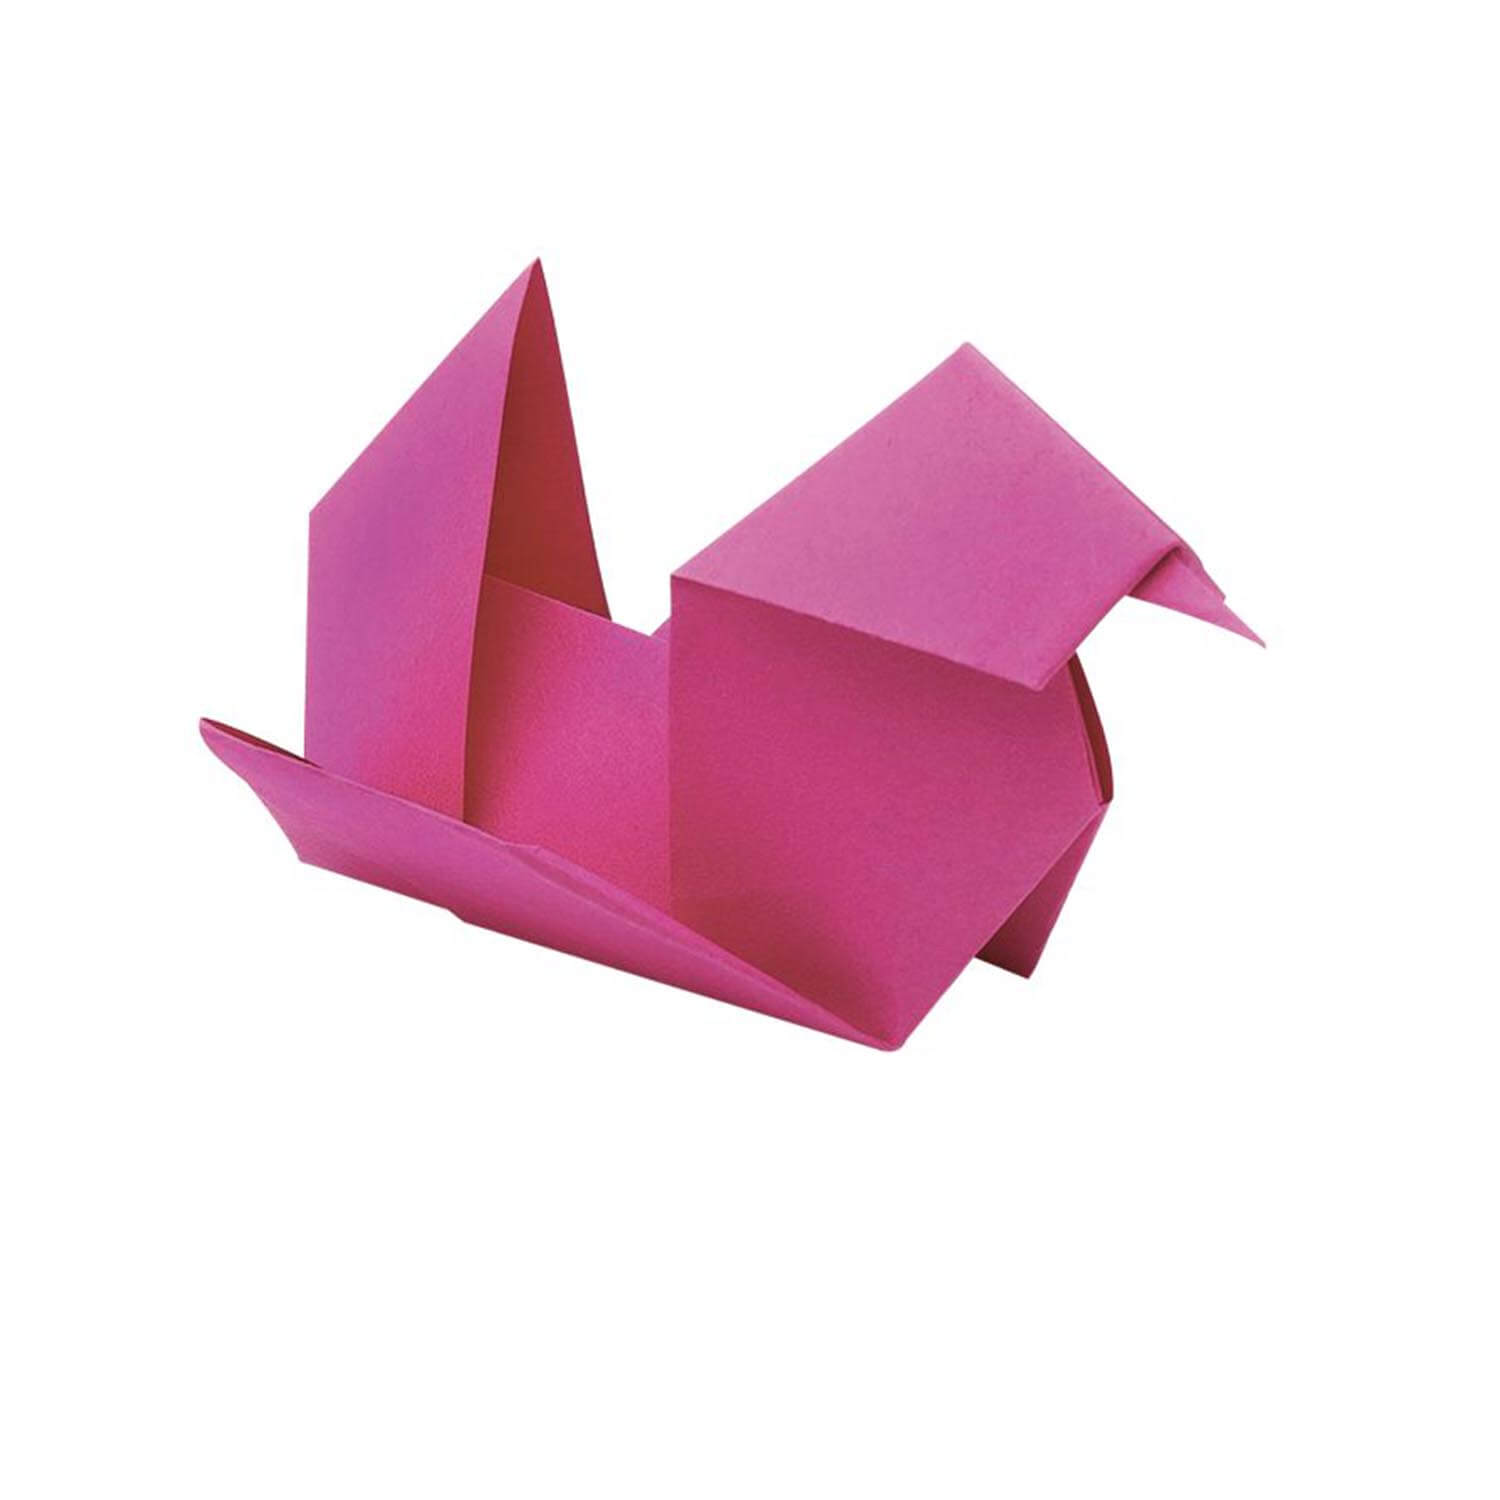 Faltblätter für Origami, 20 x 20 cm